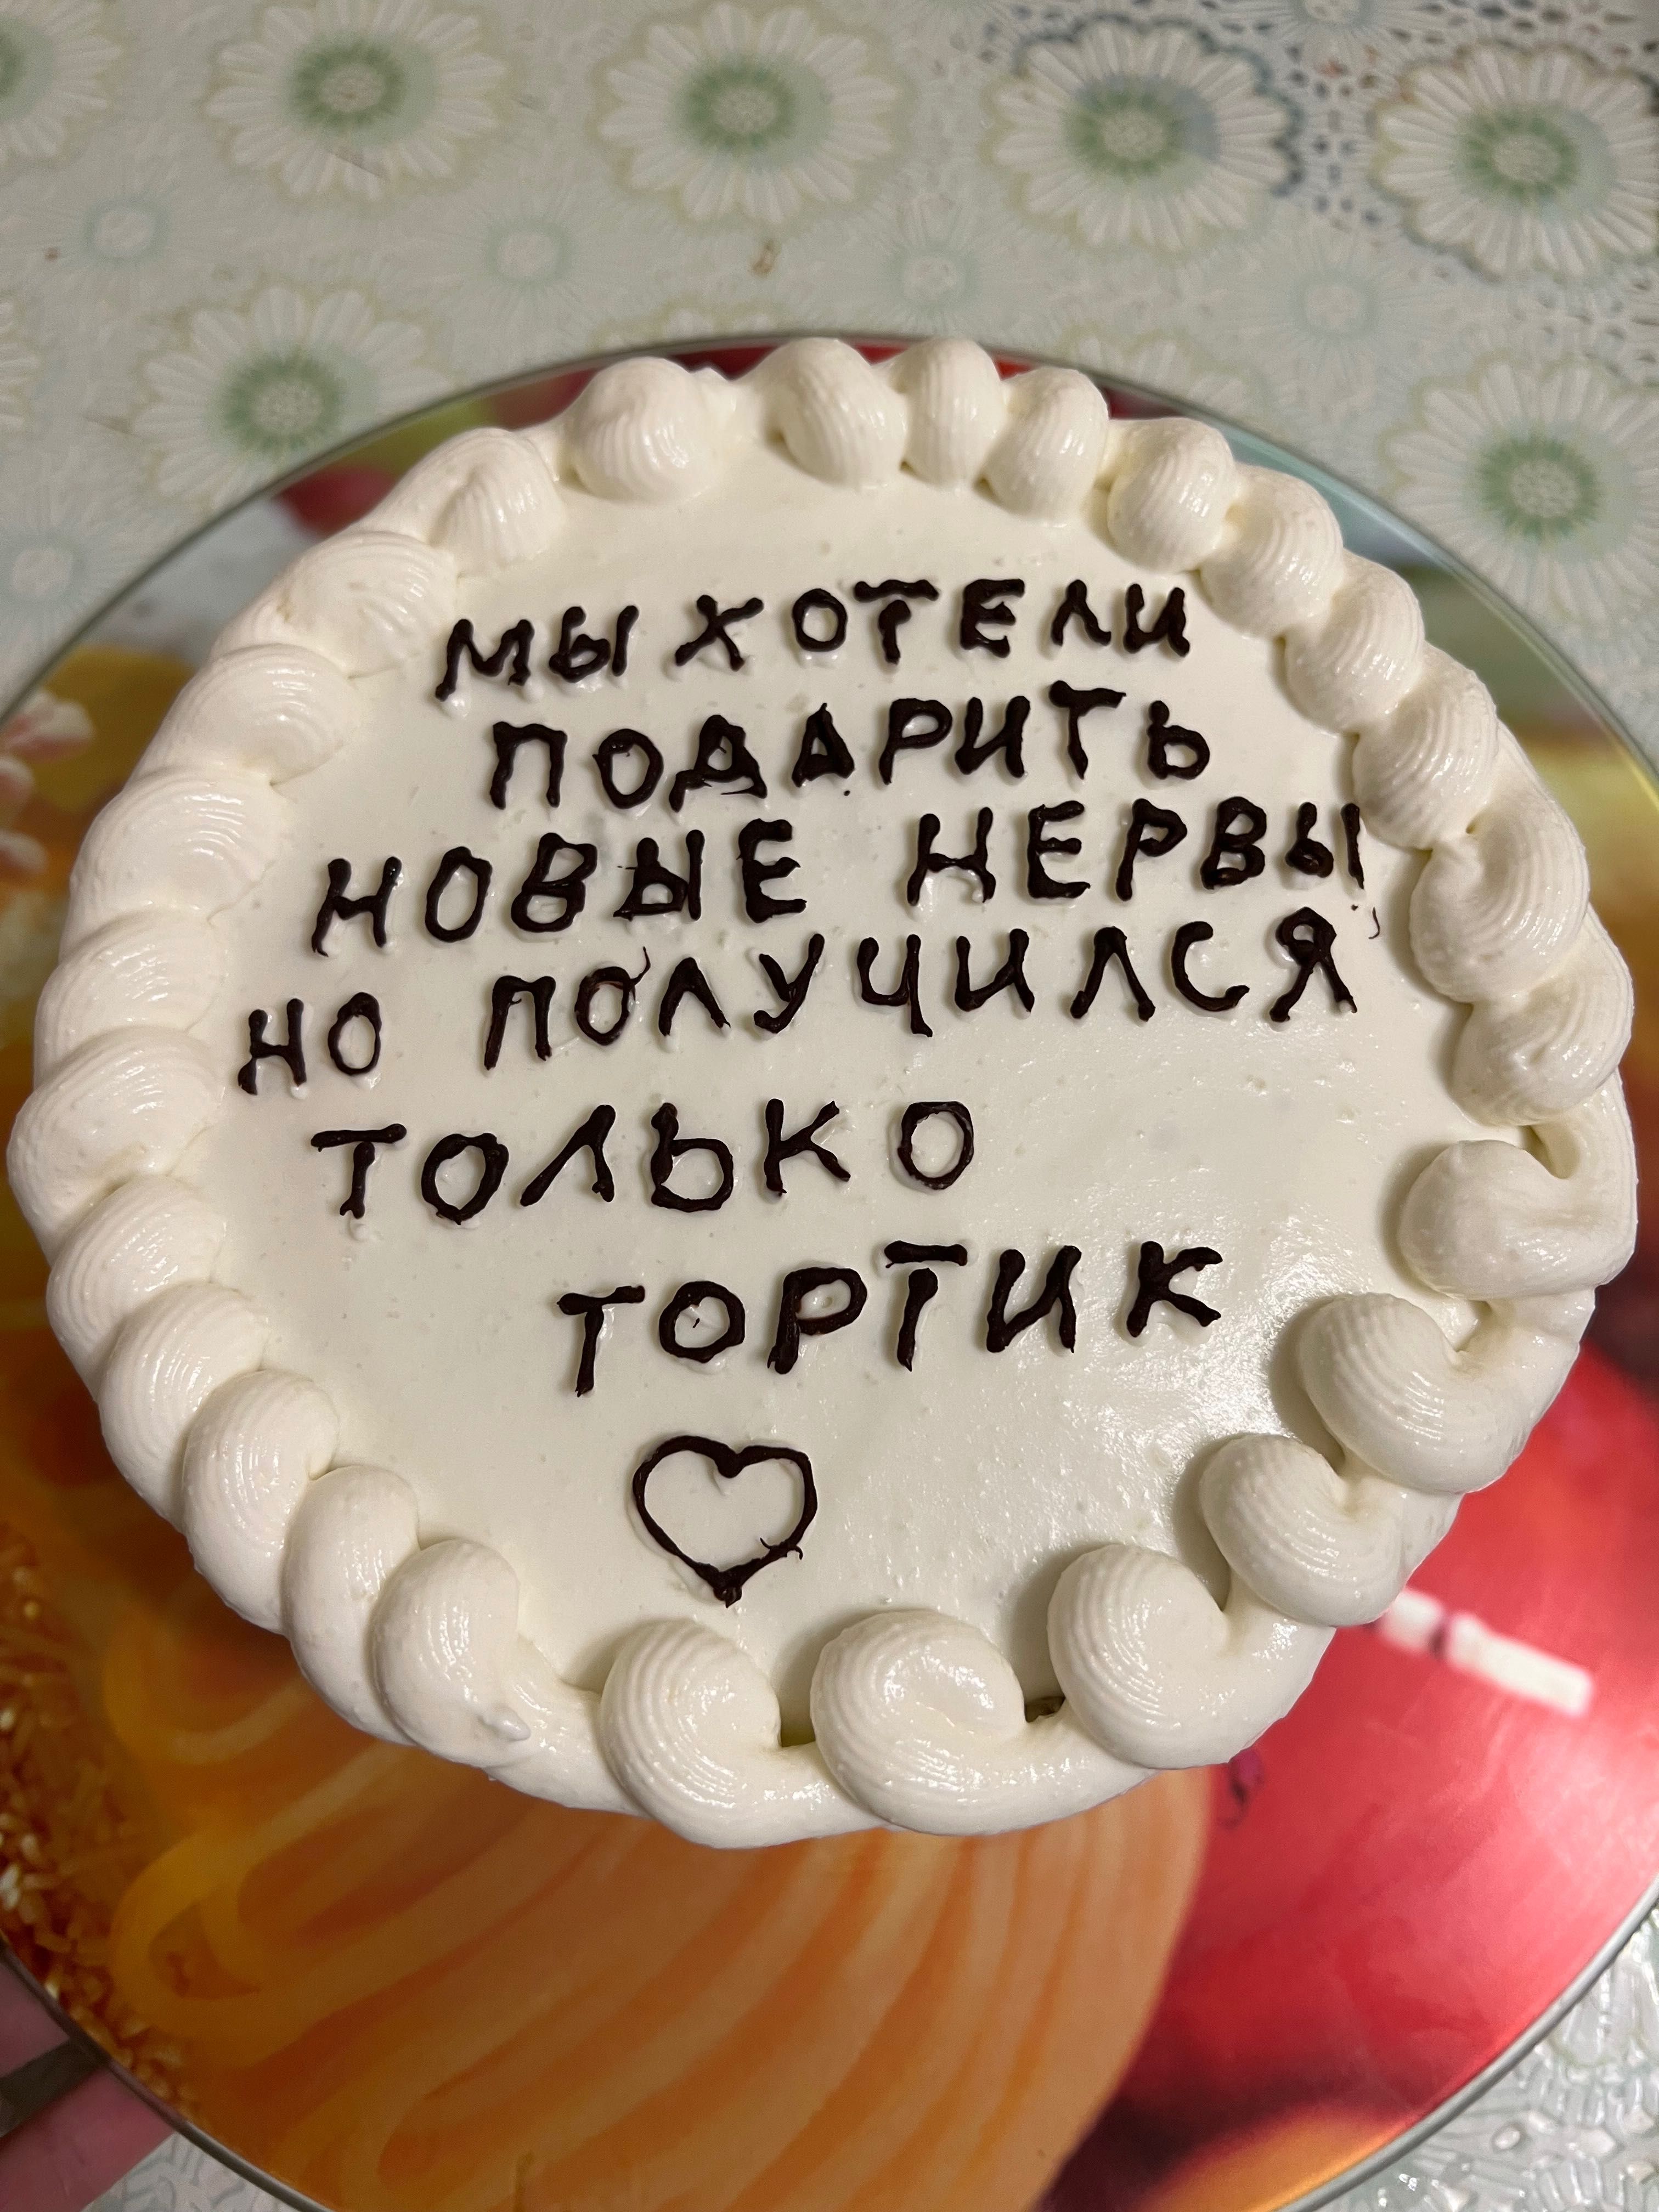 Делаем домашние торты, бенто торты, выпечку на заказ )